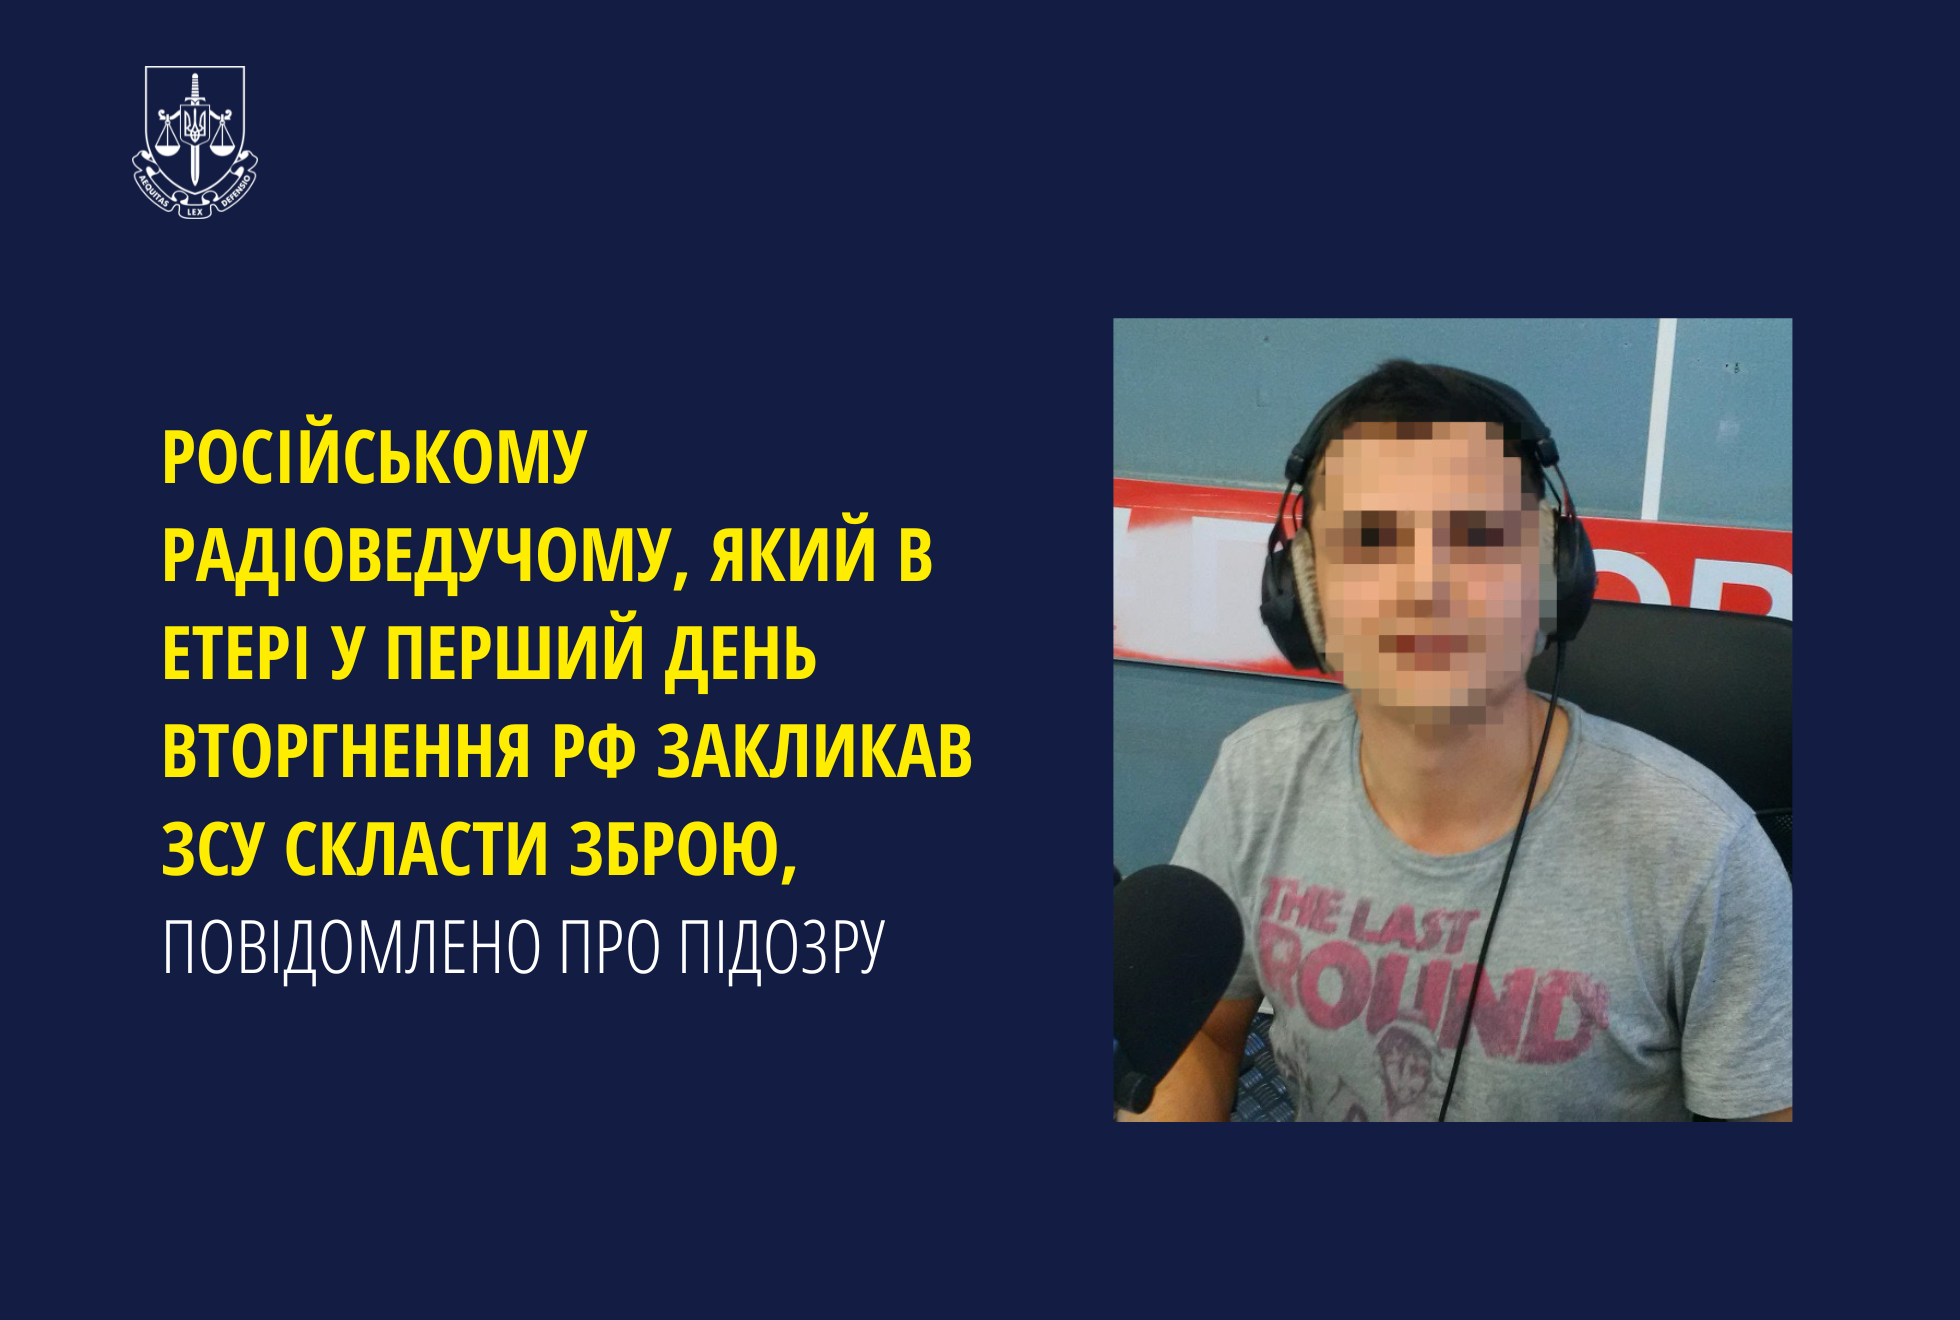 Російському радіоведучому, який в етері у перший день вторгнення закликав ЗСУ скласти зброю, повідомлено про підозру